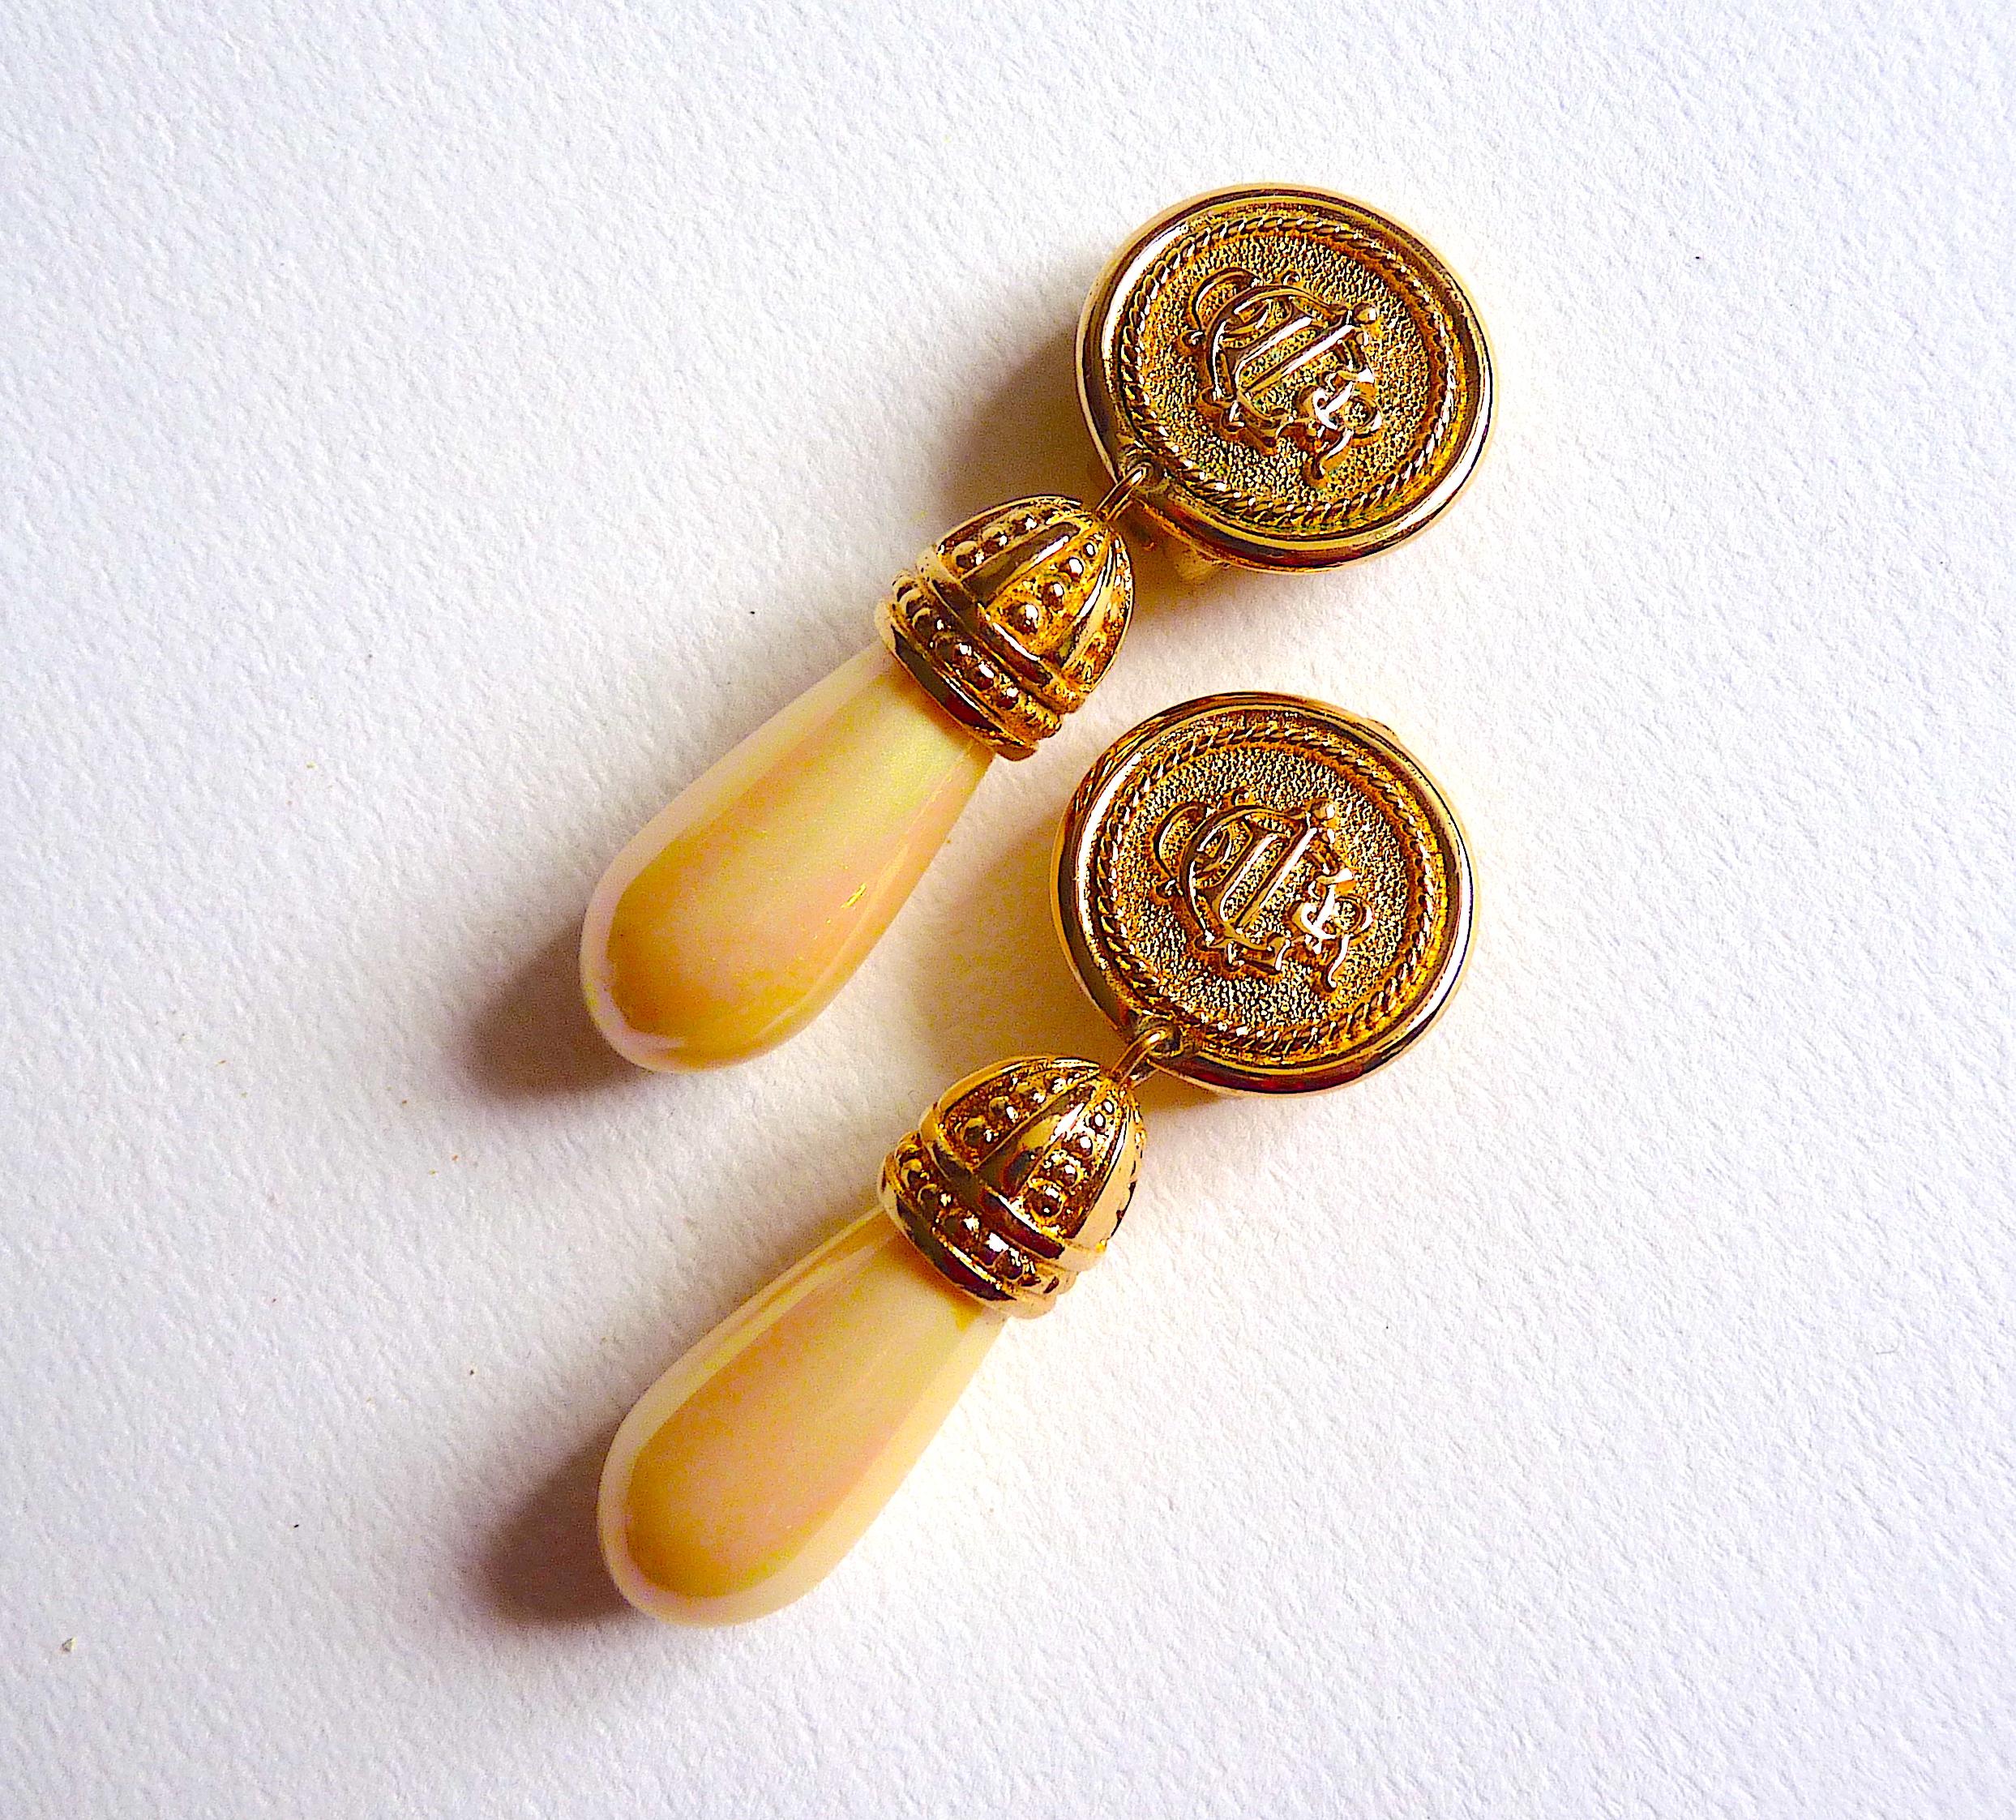 Voici une paire de boucles d'oreilles CHRISTIAN DIOR, logo Dior en métal doré terminé par une fausse perle champagne, Vintage des années 90.

Signé au dos Chr. Dior Allemagne

CONDITION : Excellent état Vintage By !

Dimensions : environ 6 X 2